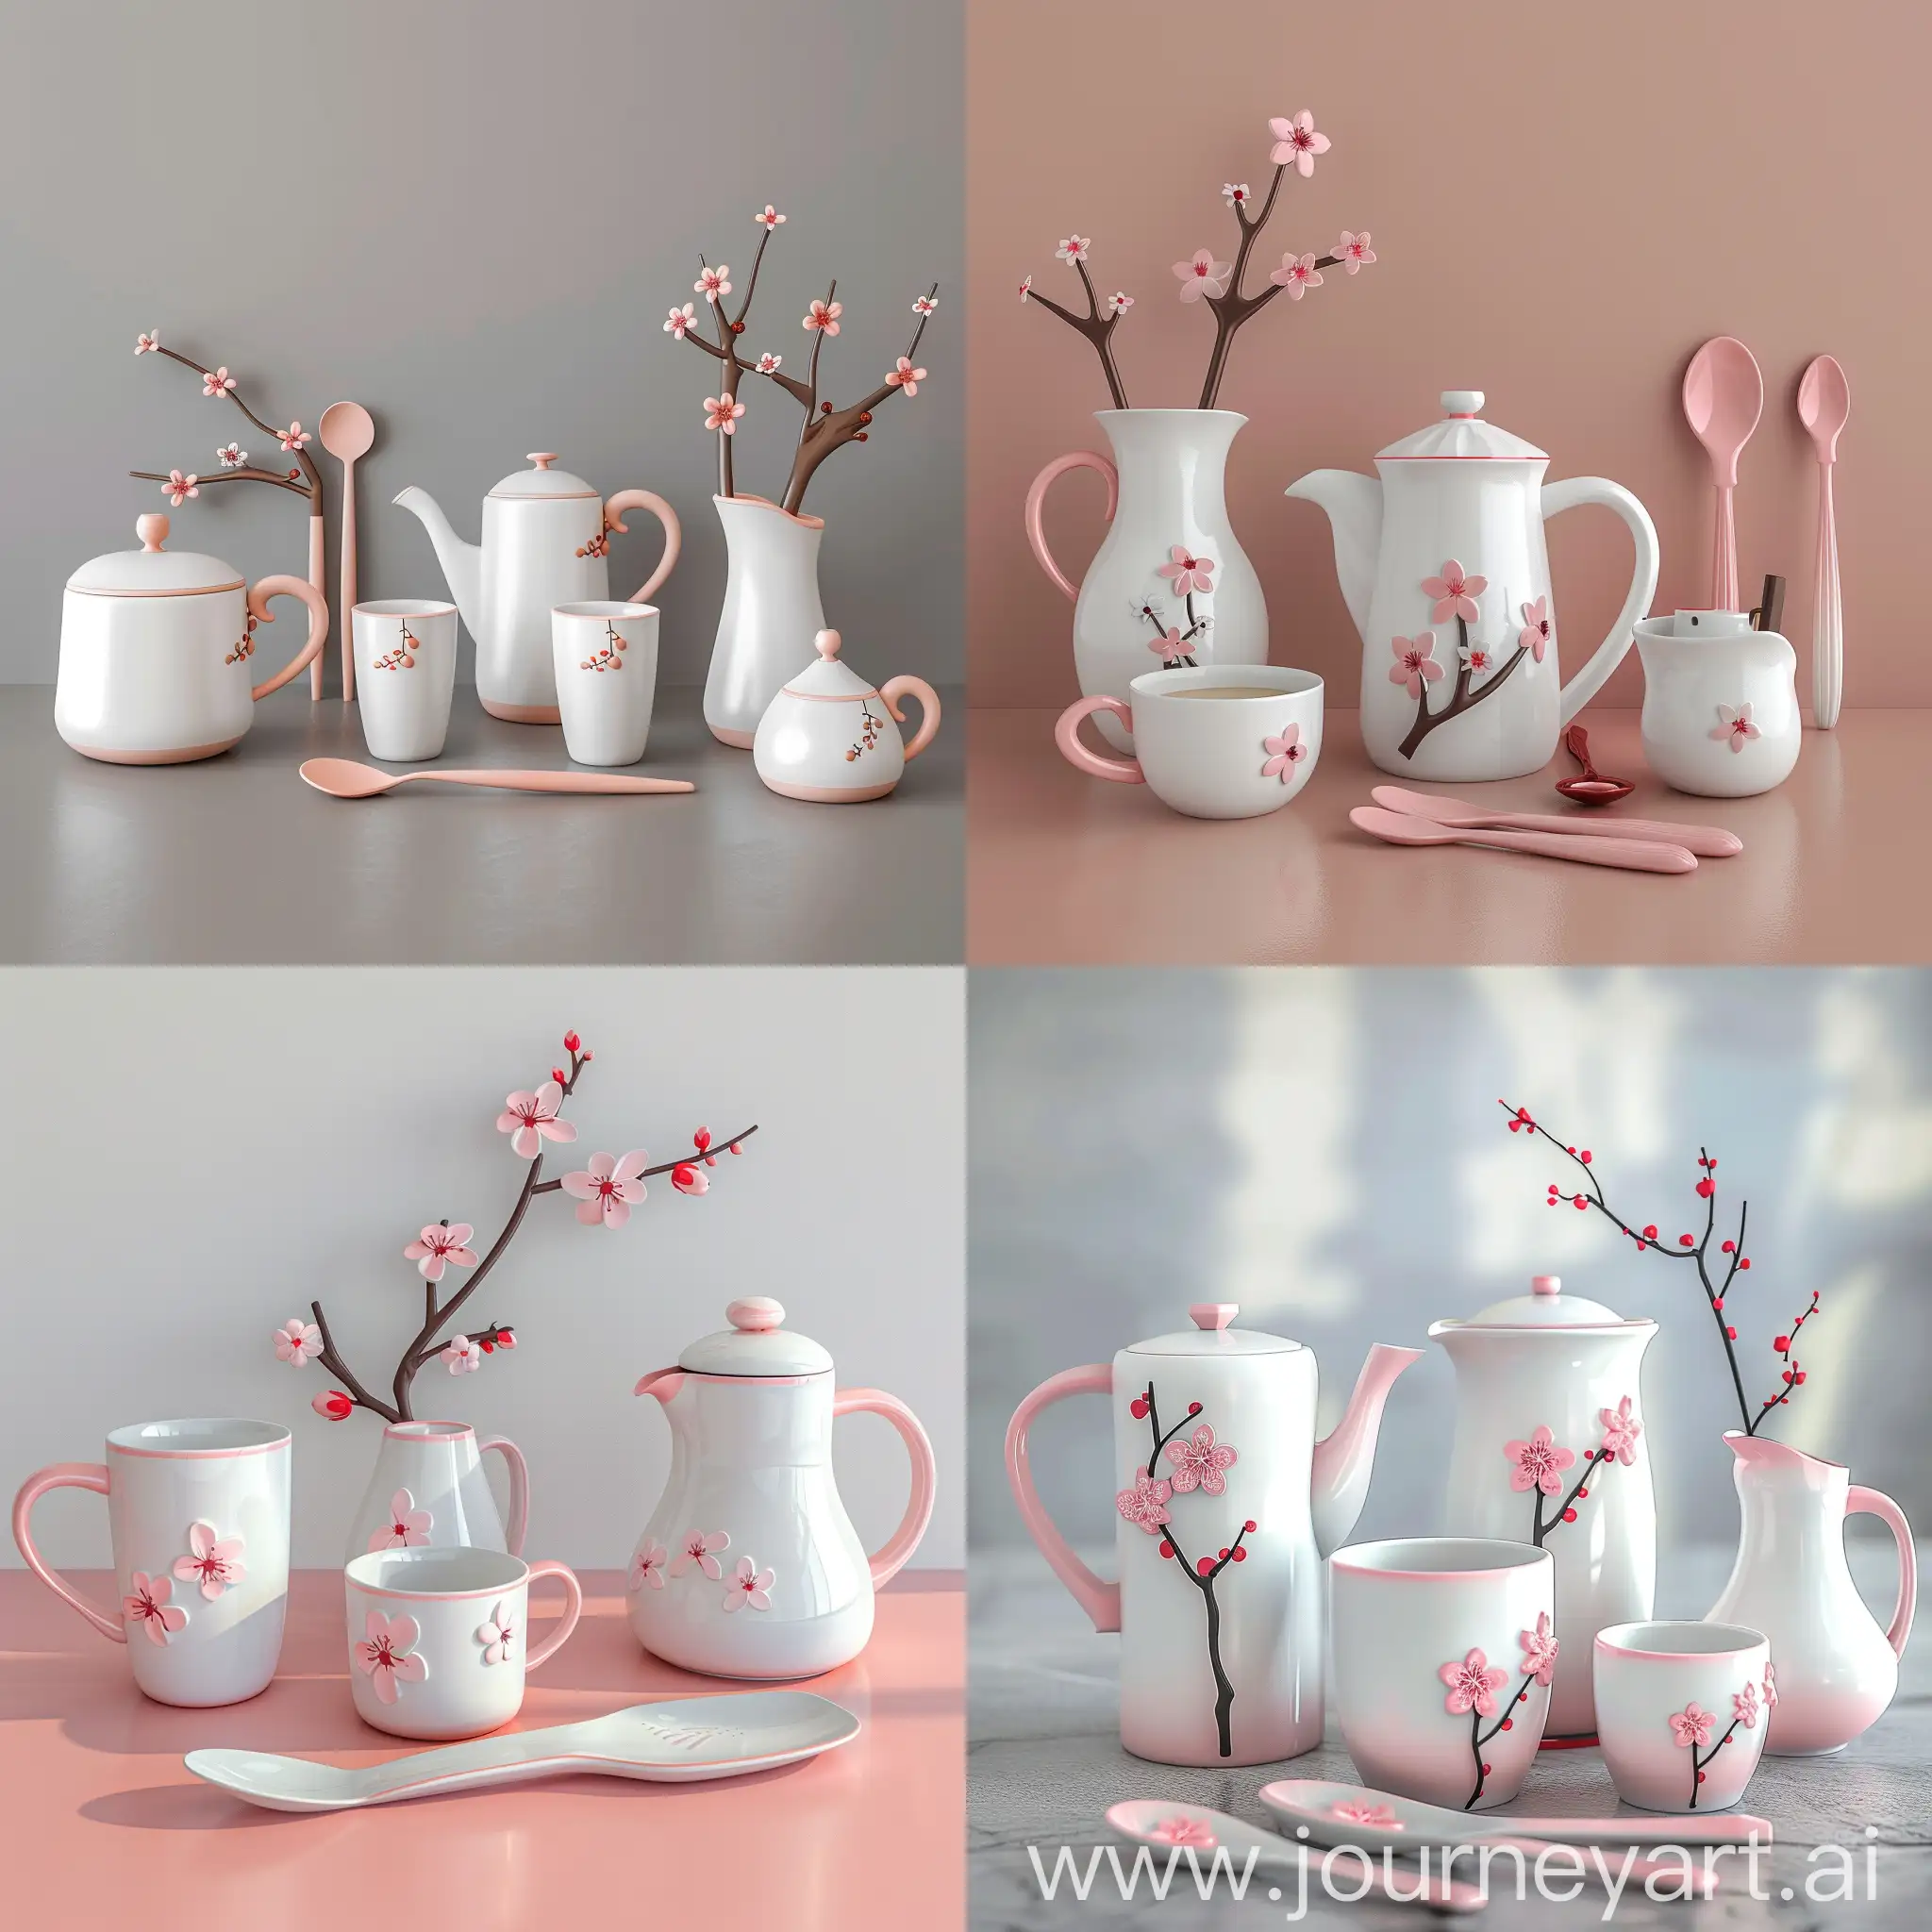 咖啡器具组合，器具上有凸起梅花装饰，一个咖啡杯，一个咖啡壶，一个奶罐，一个汤匙，白粉配色，效果图，高清，放在桌子上